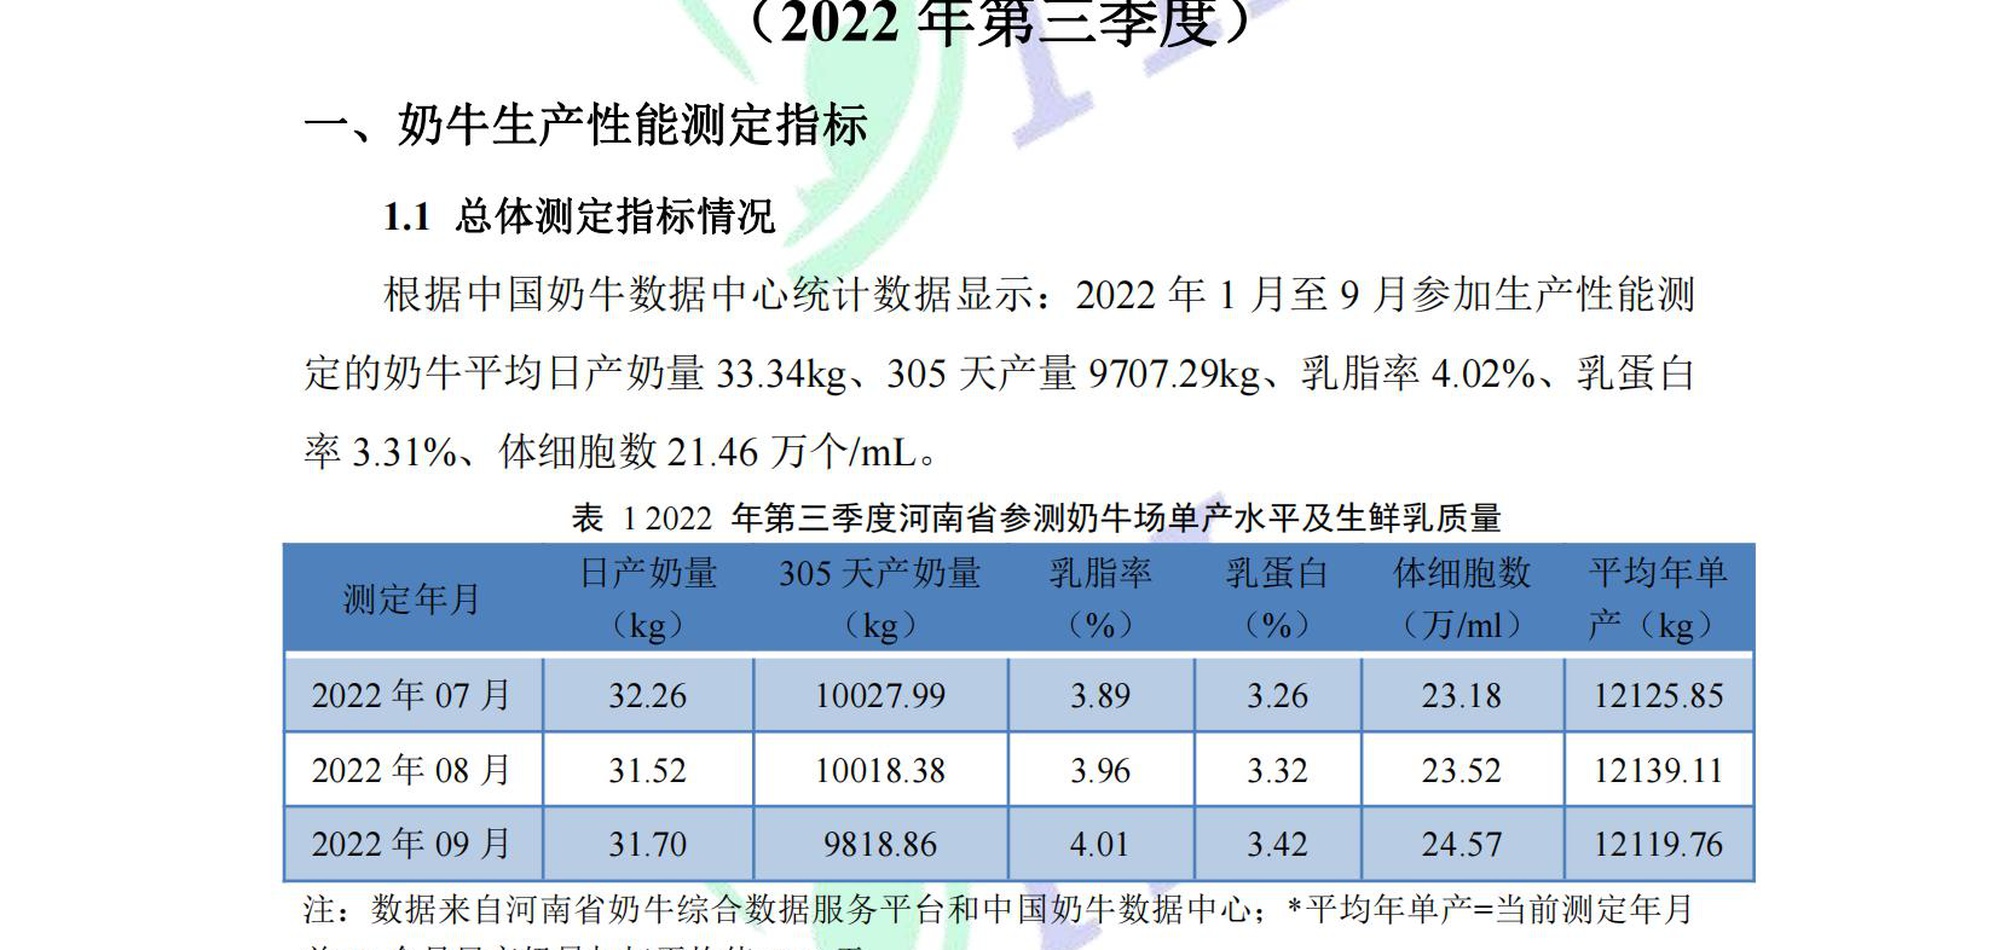 河南省奶业形势及DHI测定情况分析（2022年第3季度报告） 11.11